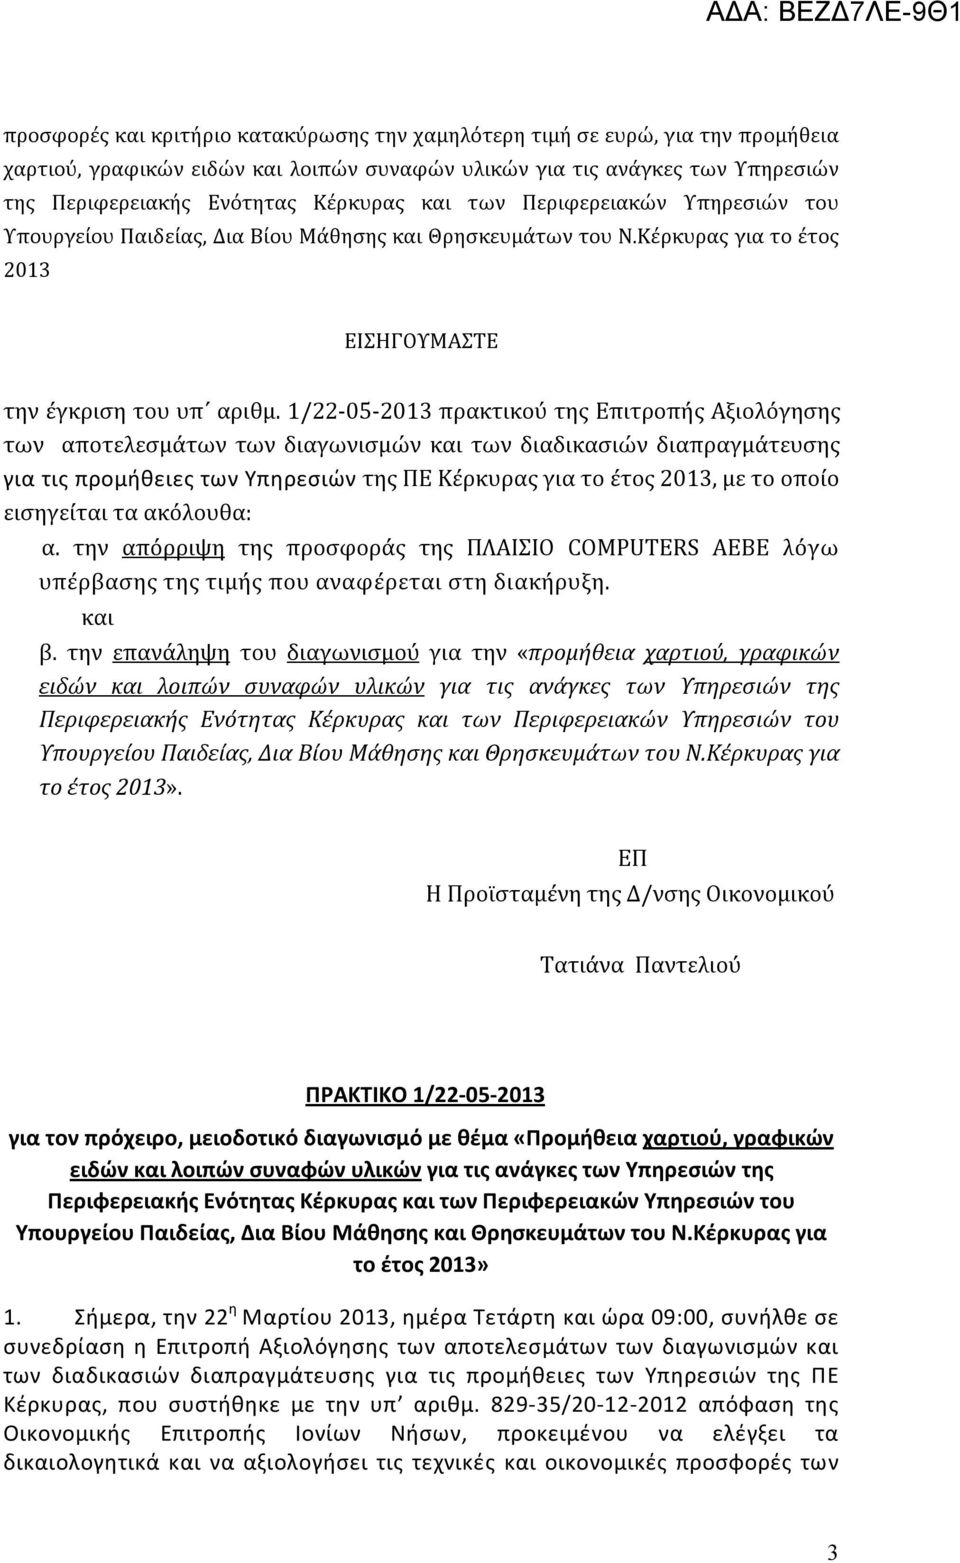 1/22-05-2013 πρακτικού της Επιτροπής Αξιολόγησης των αποτελεσμάτων των διαγωνισμών και των διαδικασιών διαπραγμάτευσης για τις προμήθειες των Υπηρεσιών της ΠΕ Κέρκυρας για το έτος 2013, με το οποίο